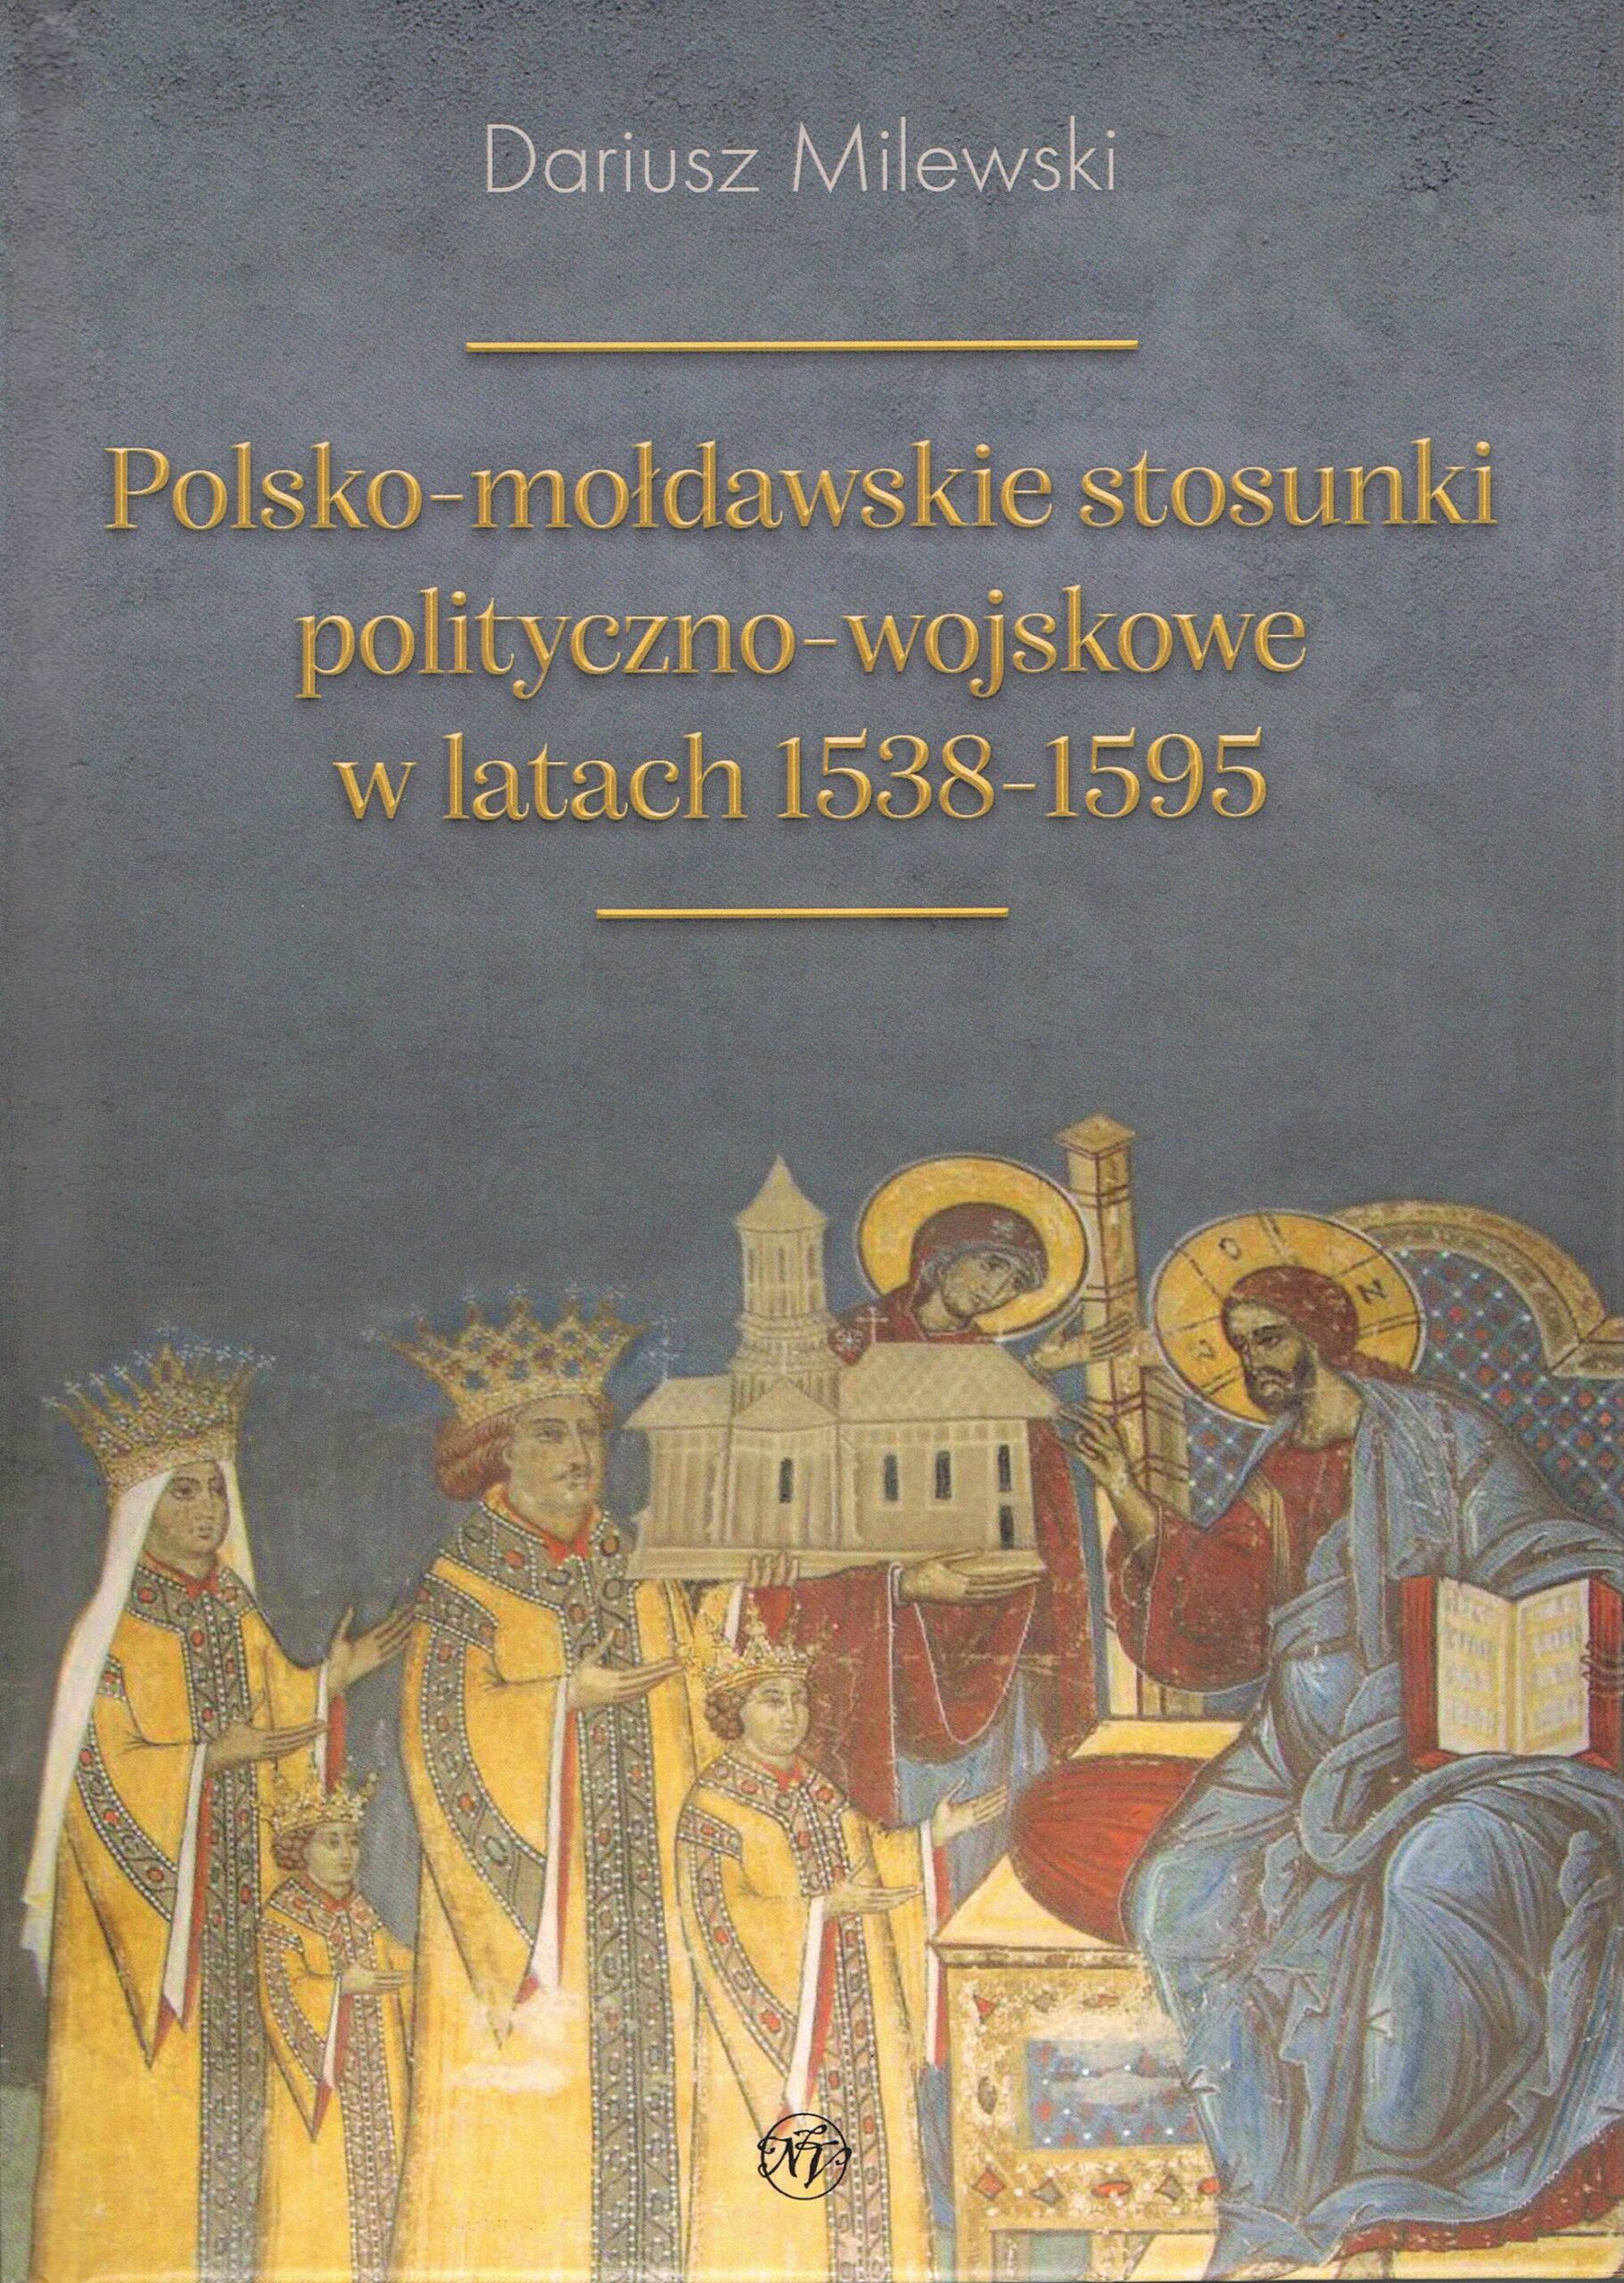 Publikacja prof. D. Milewskiego: „Polsko-mołdawskie stosunki polityczno-wojskowe w latach 1538-1595”